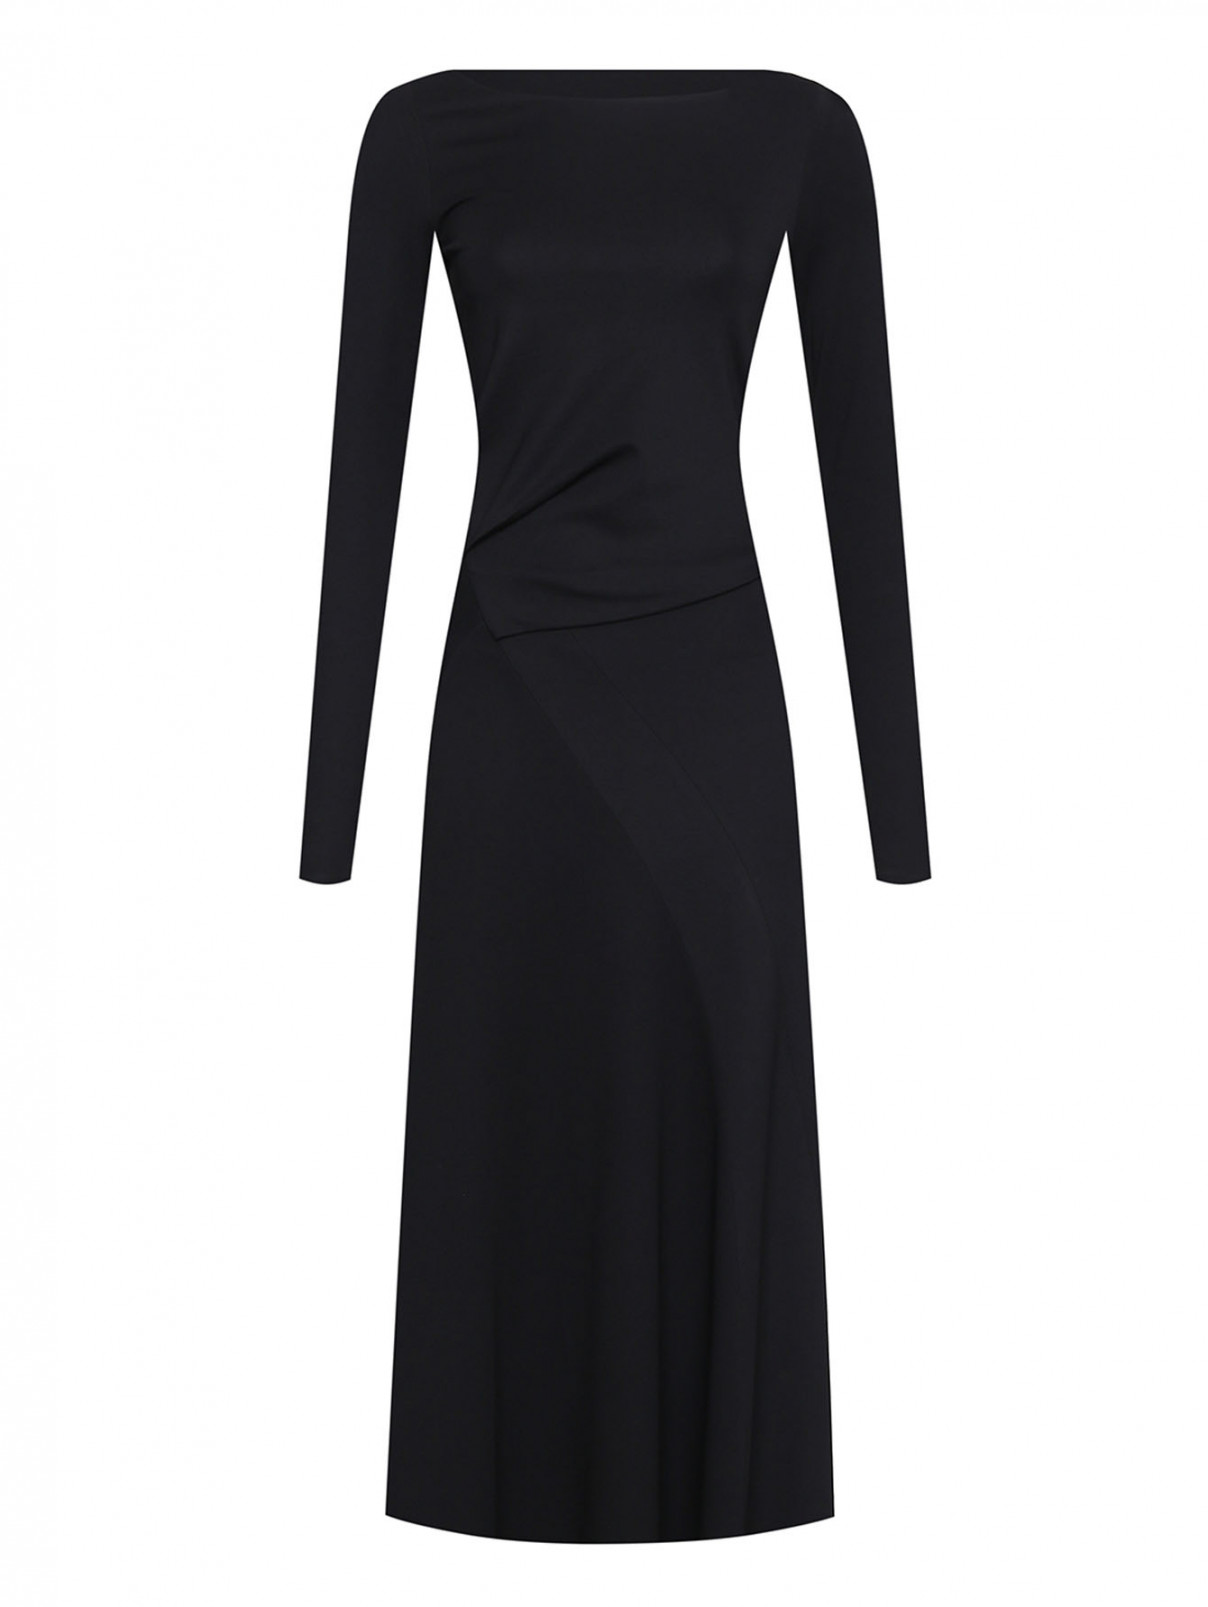 Однотонное платье с драпировкой Dorothee Schumacher  –  Общий вид  – Цвет:  Черный